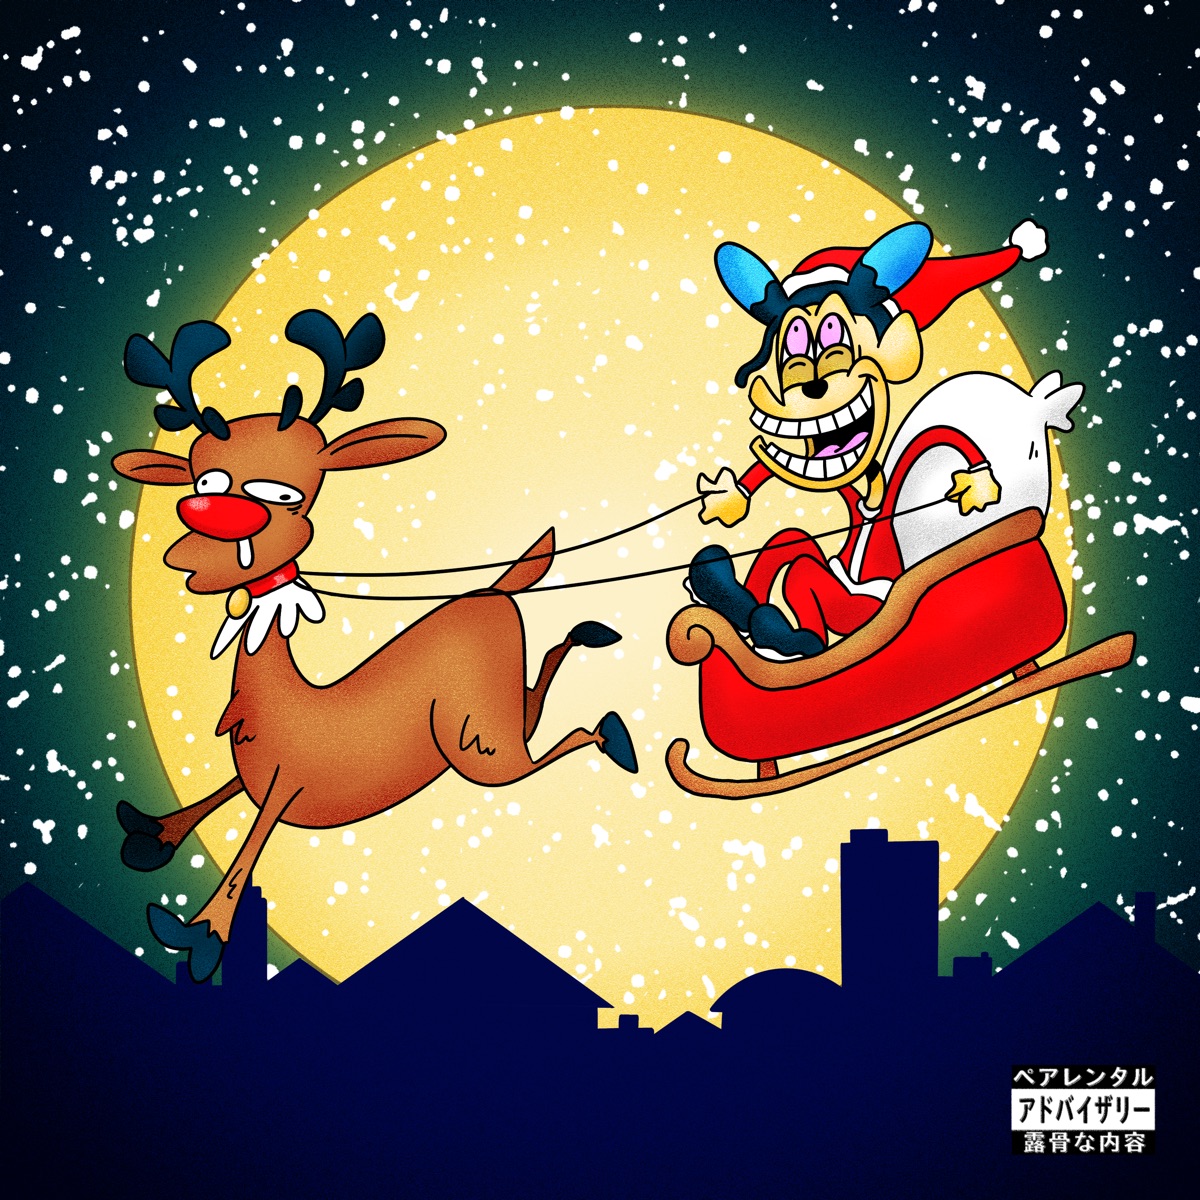 Cover art for『SANTAWORLDVIEW & Xansei - Awatenbou no Santa Claus』from the release『Awatenbou no Santa Claus』